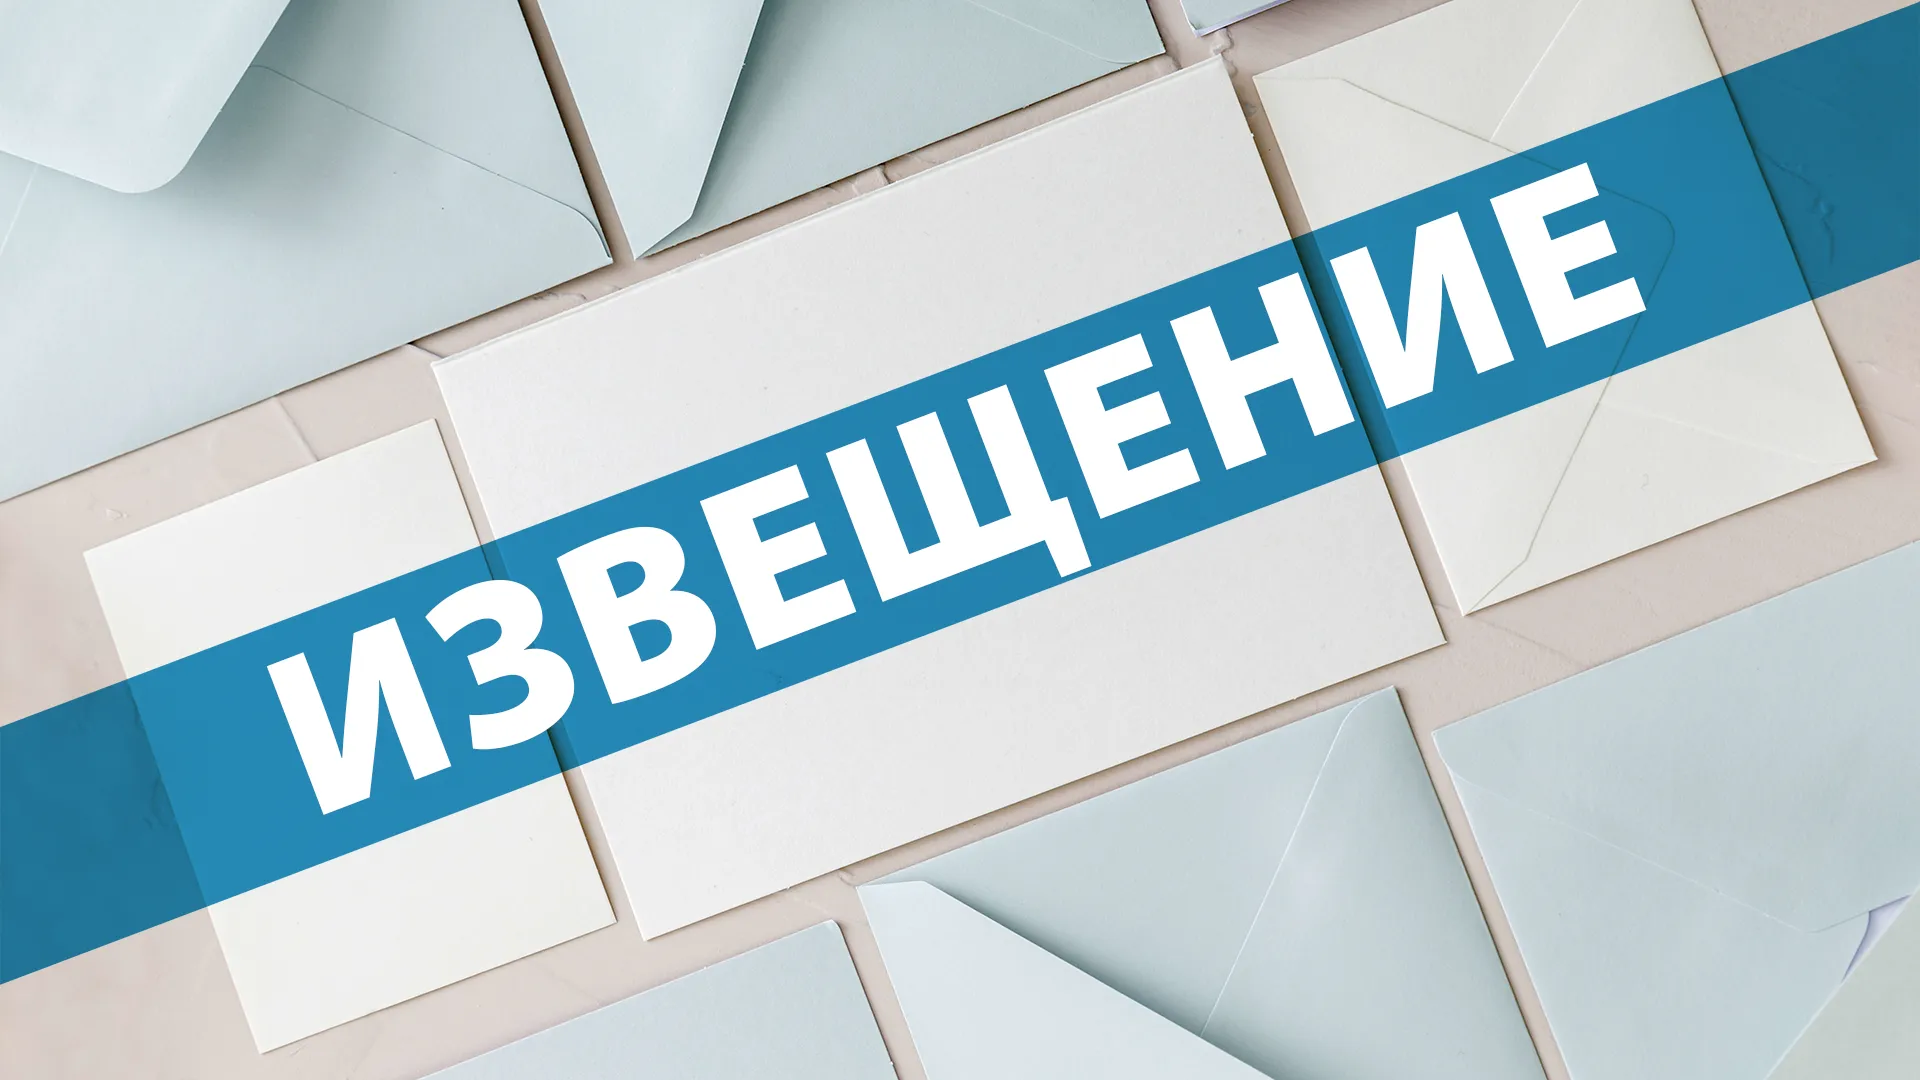 Организованы торги по продаже недвижимости в Московской области: участие открыто до 2 мая